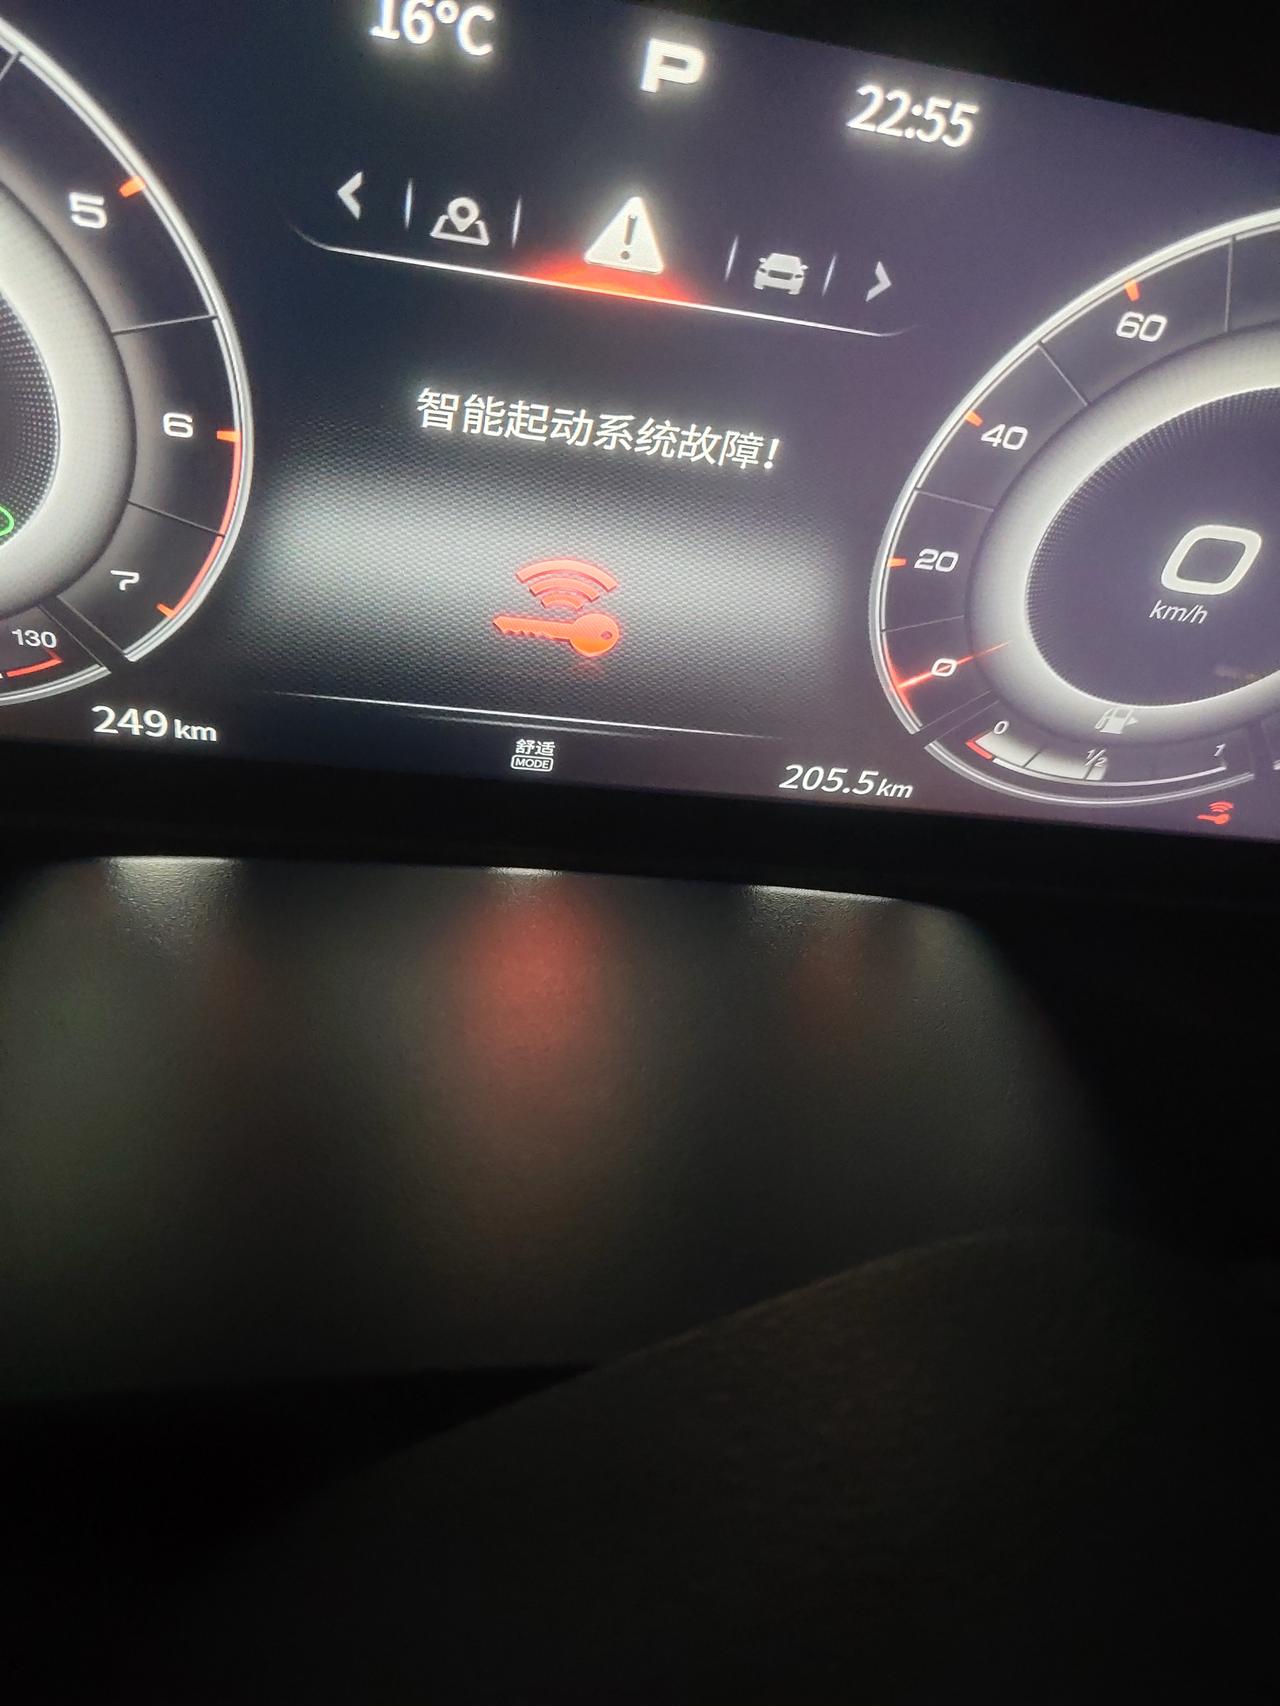 红旗HS5 的车开始仪表盘显示智能启动系统故障怎么回事？有谁遇到过，车才提半个月